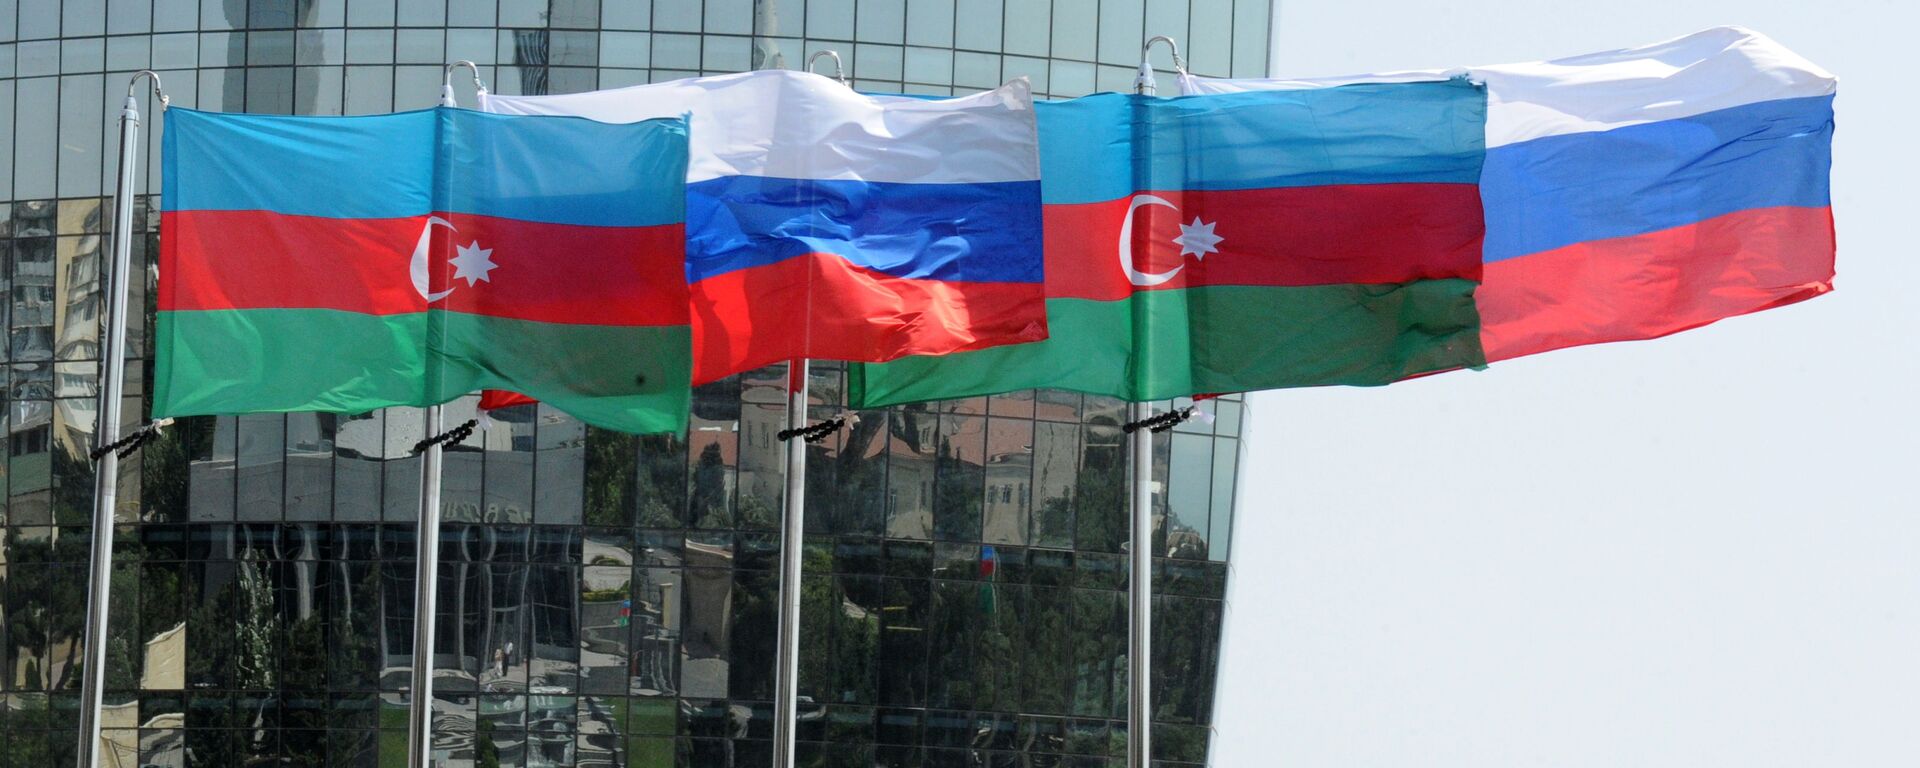 Национальные флаги России и Азербайджана на фоне фасада одной из башен Башни Пламени (Flame Towers) в Баку - Sputnik Азербайджан, 1920, 04.04.2022